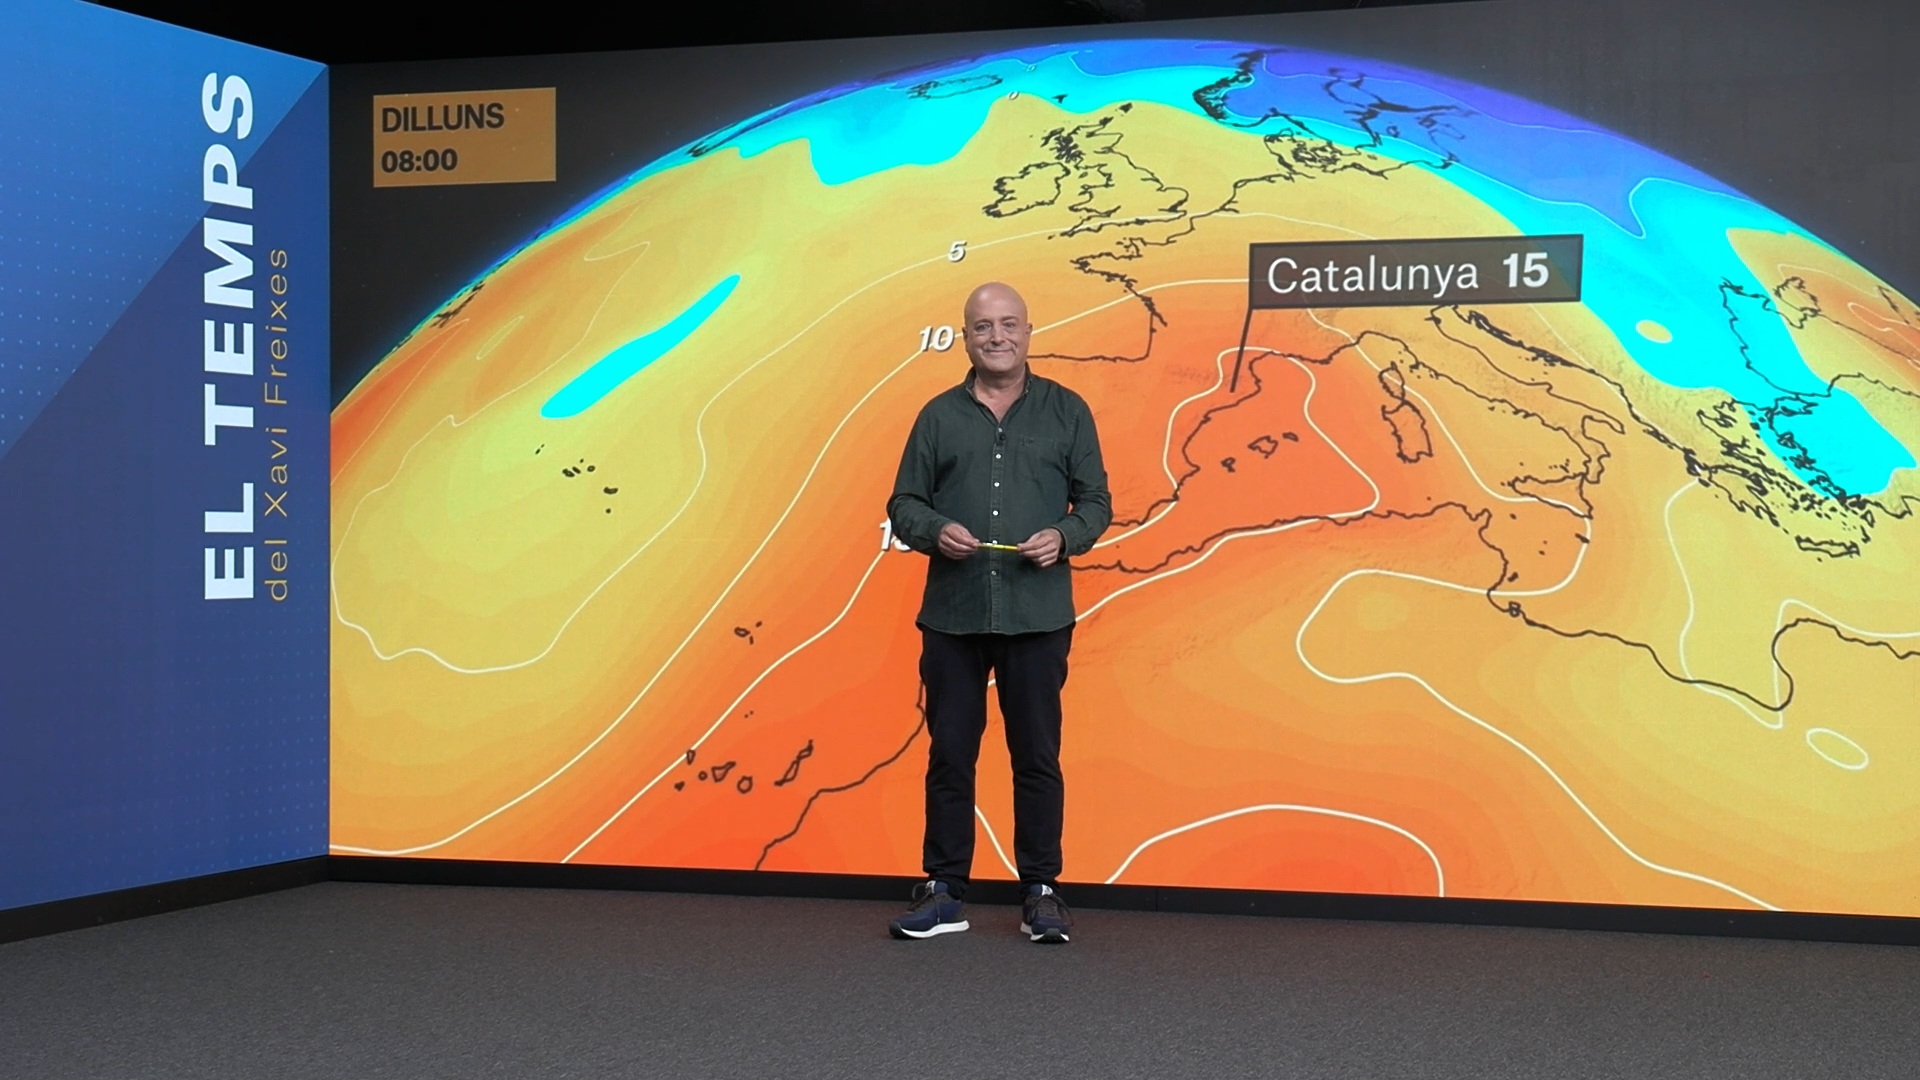 La previsión del tiempo anuncia cambios repentinos en Catalunya: ¿paraguas y chaquetas?